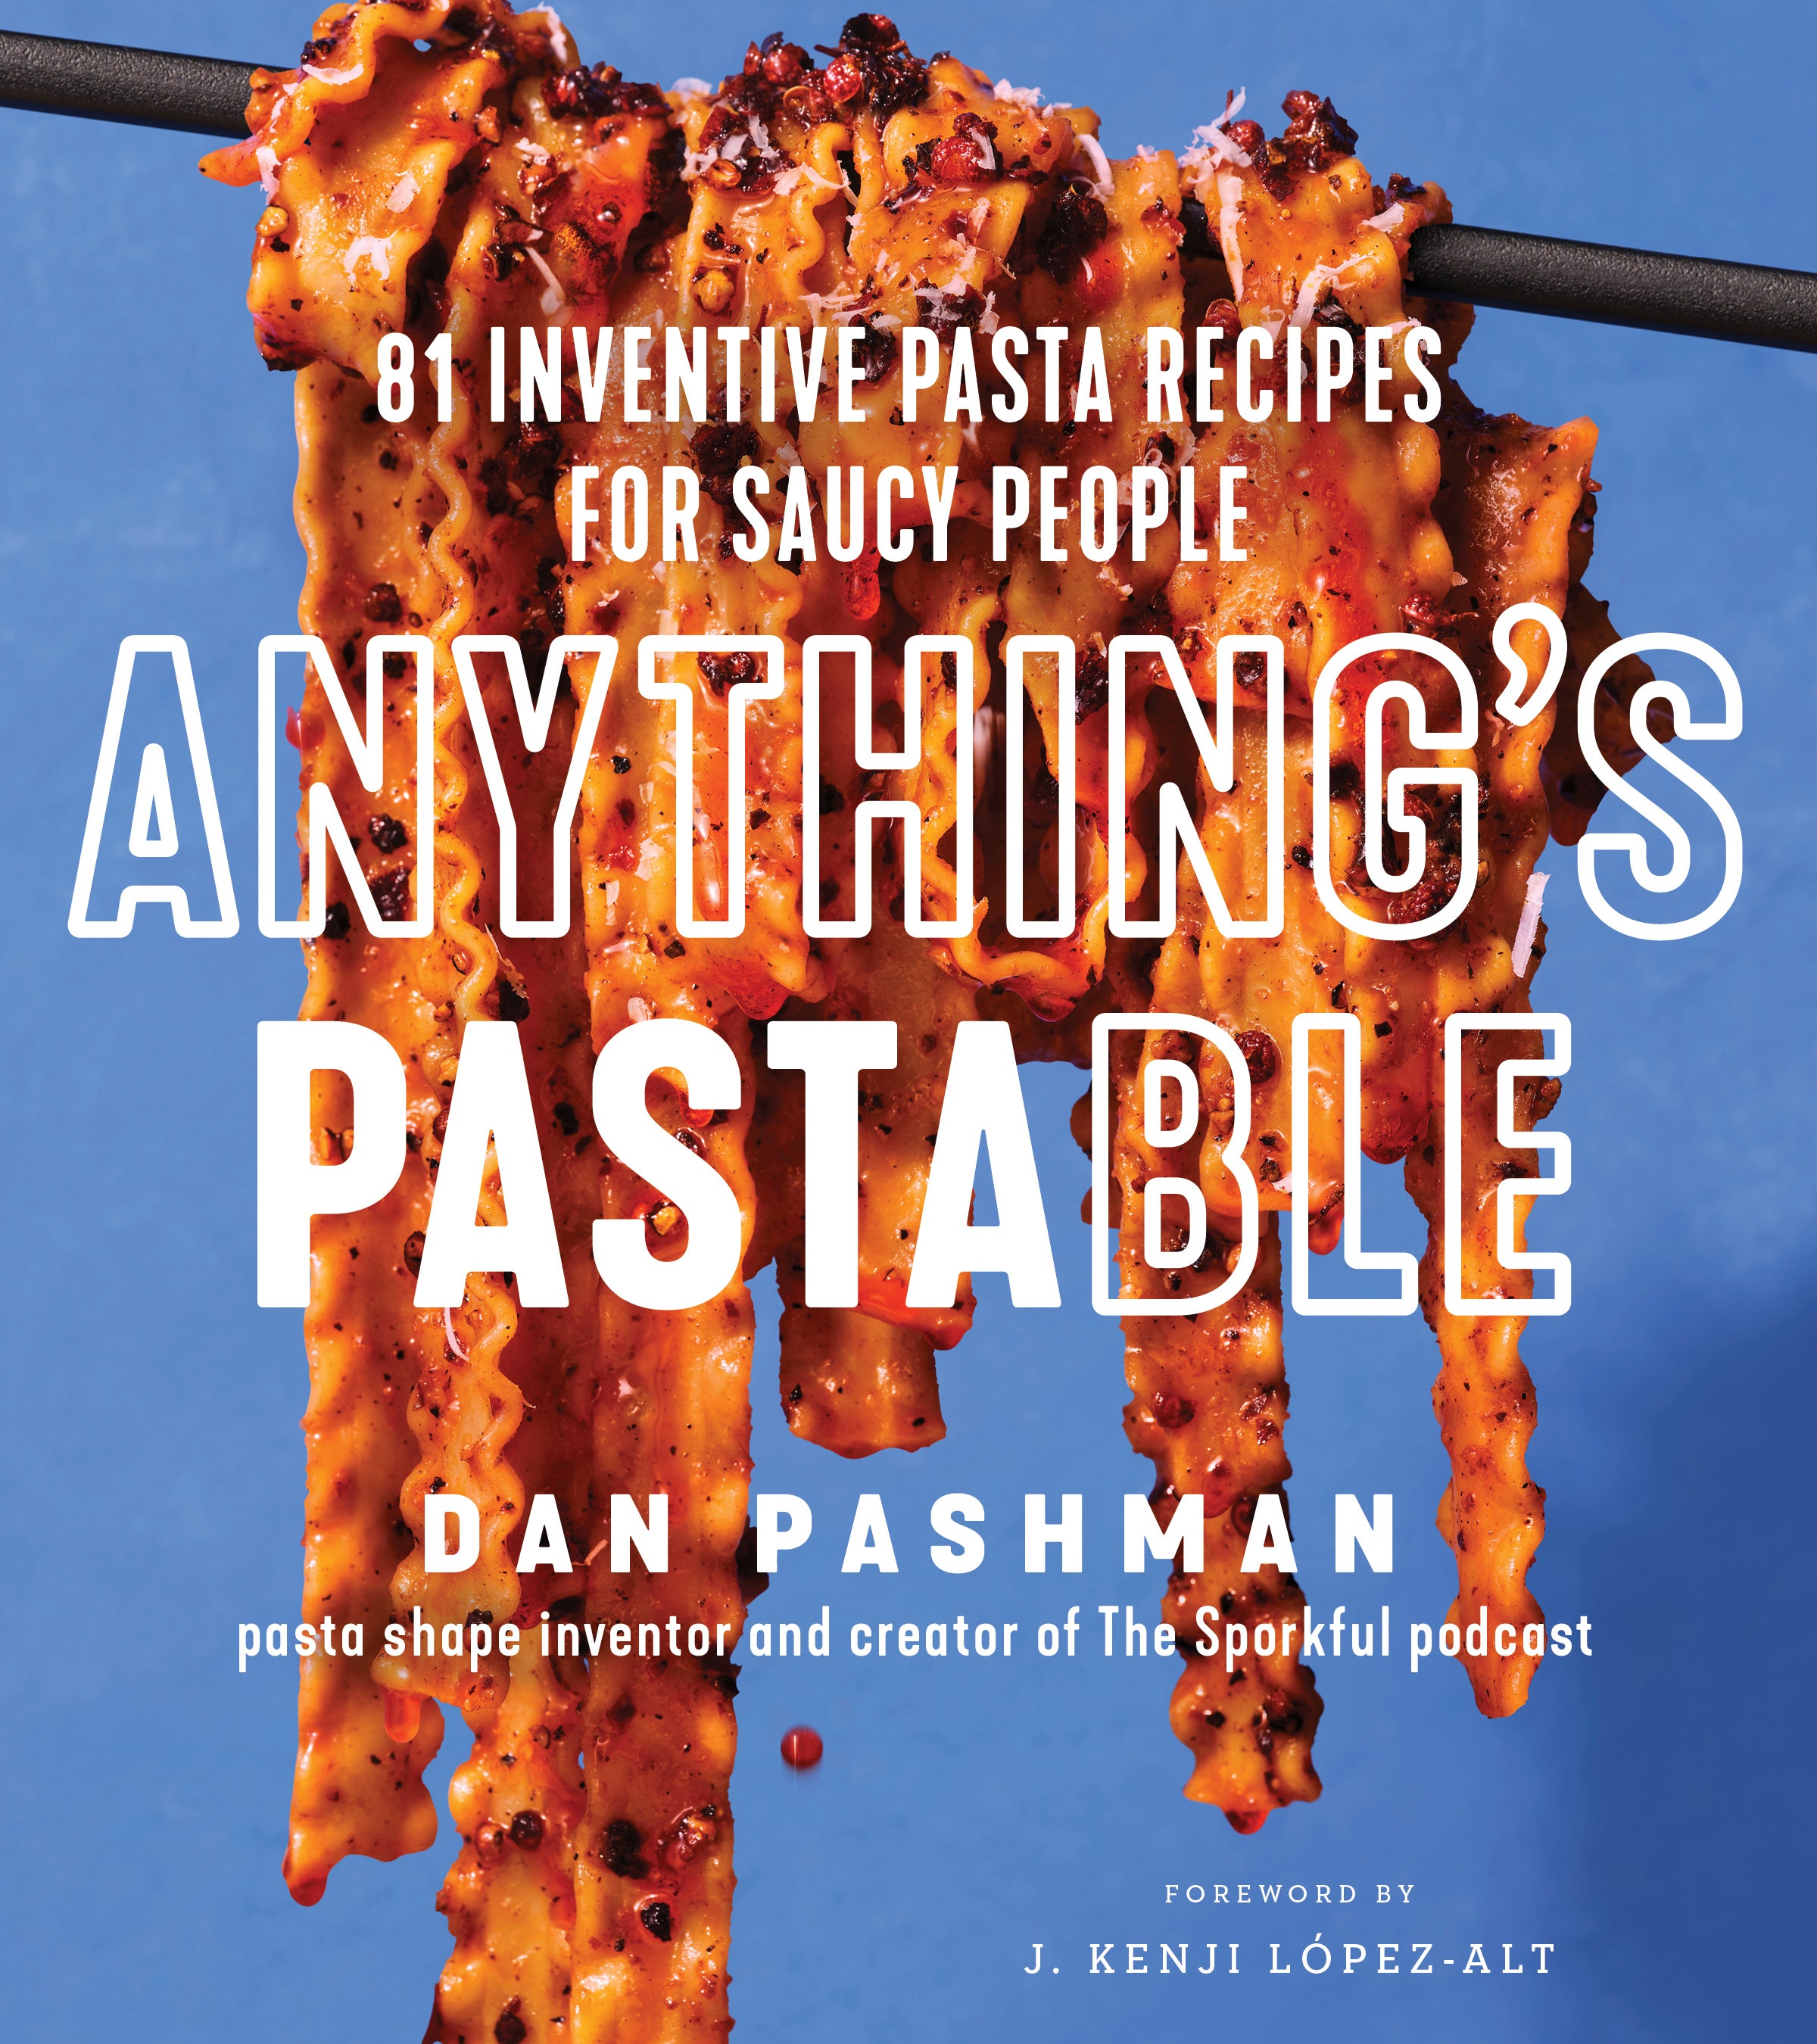 Food-Dan Pashman